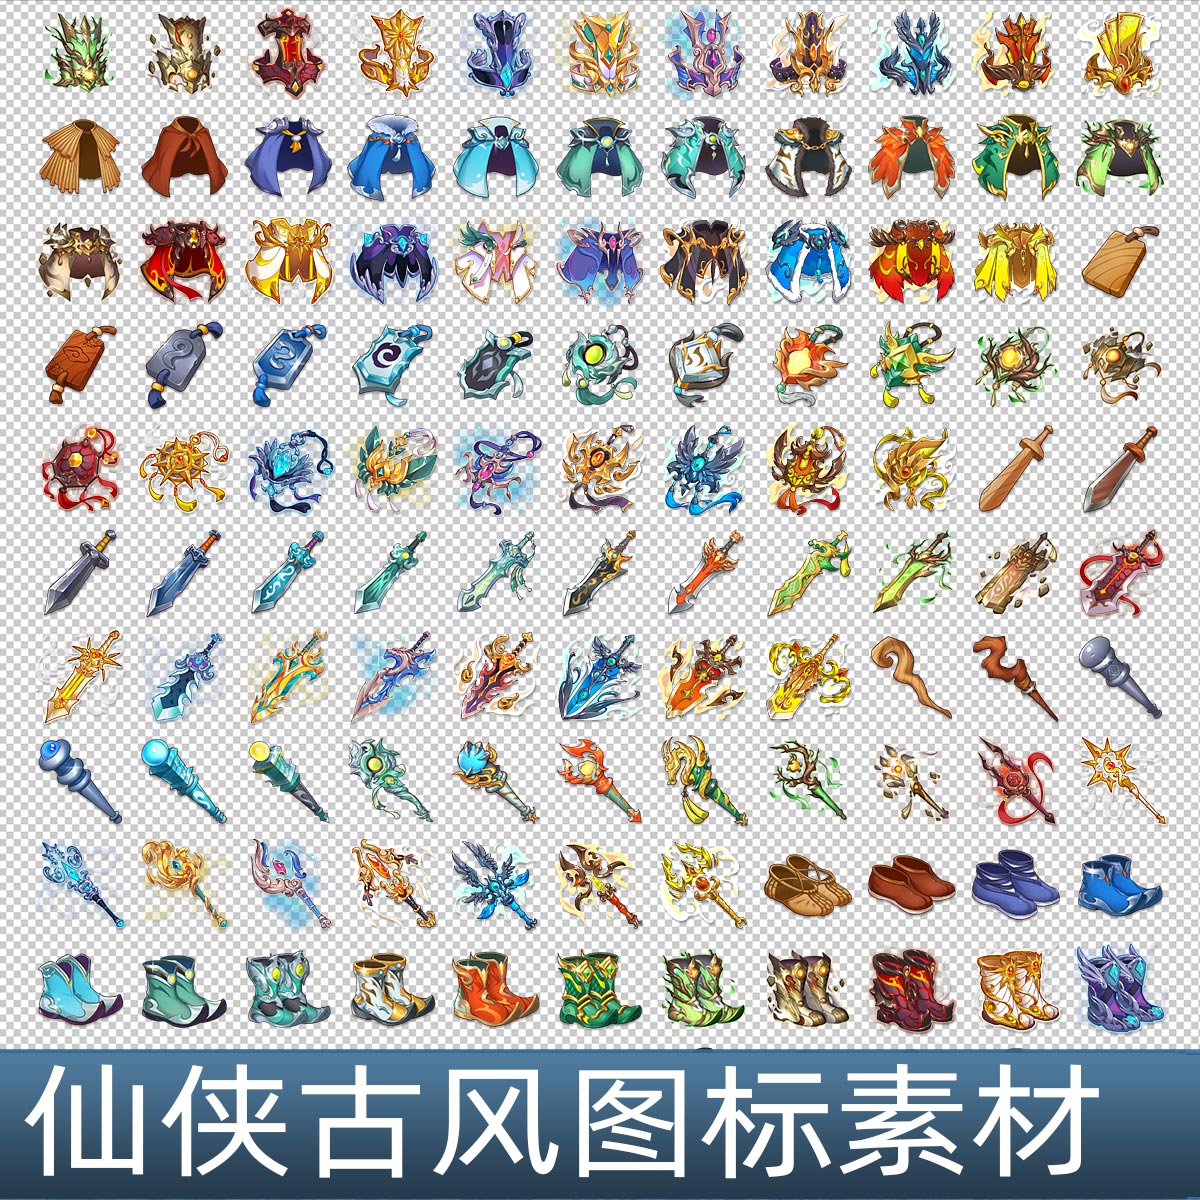 1165枚 仙侠中国风古代风格Q版卡通手游游戏装备图标物品素材合集